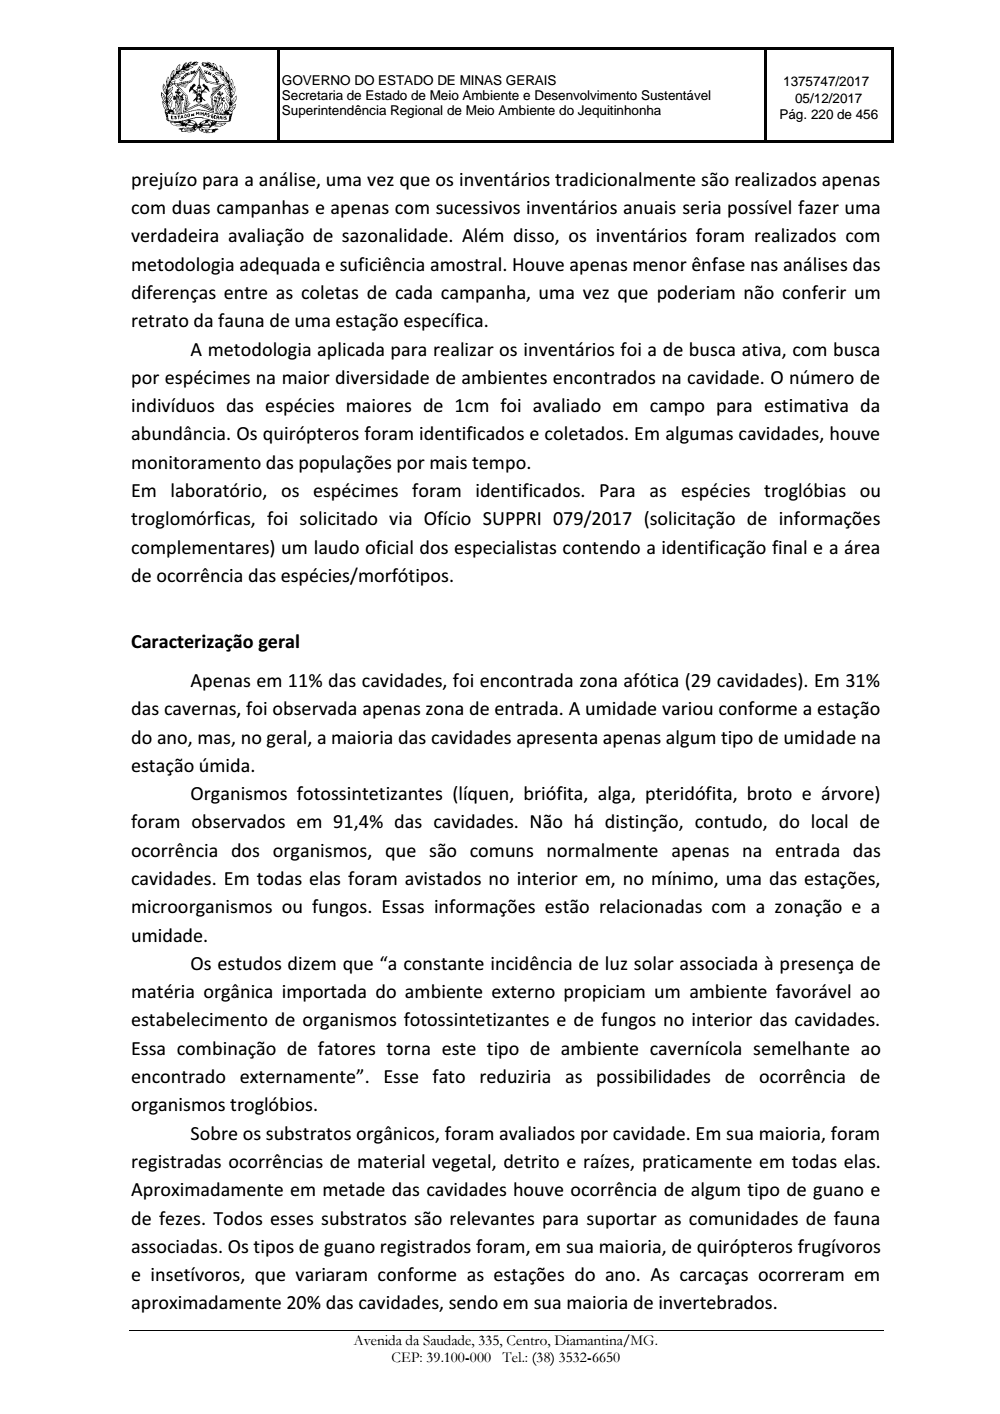 Page 220 from Parecer único da Secretaria de estado de Meio Ambiente e Desenvolvimento Sustentável (SEMAD)